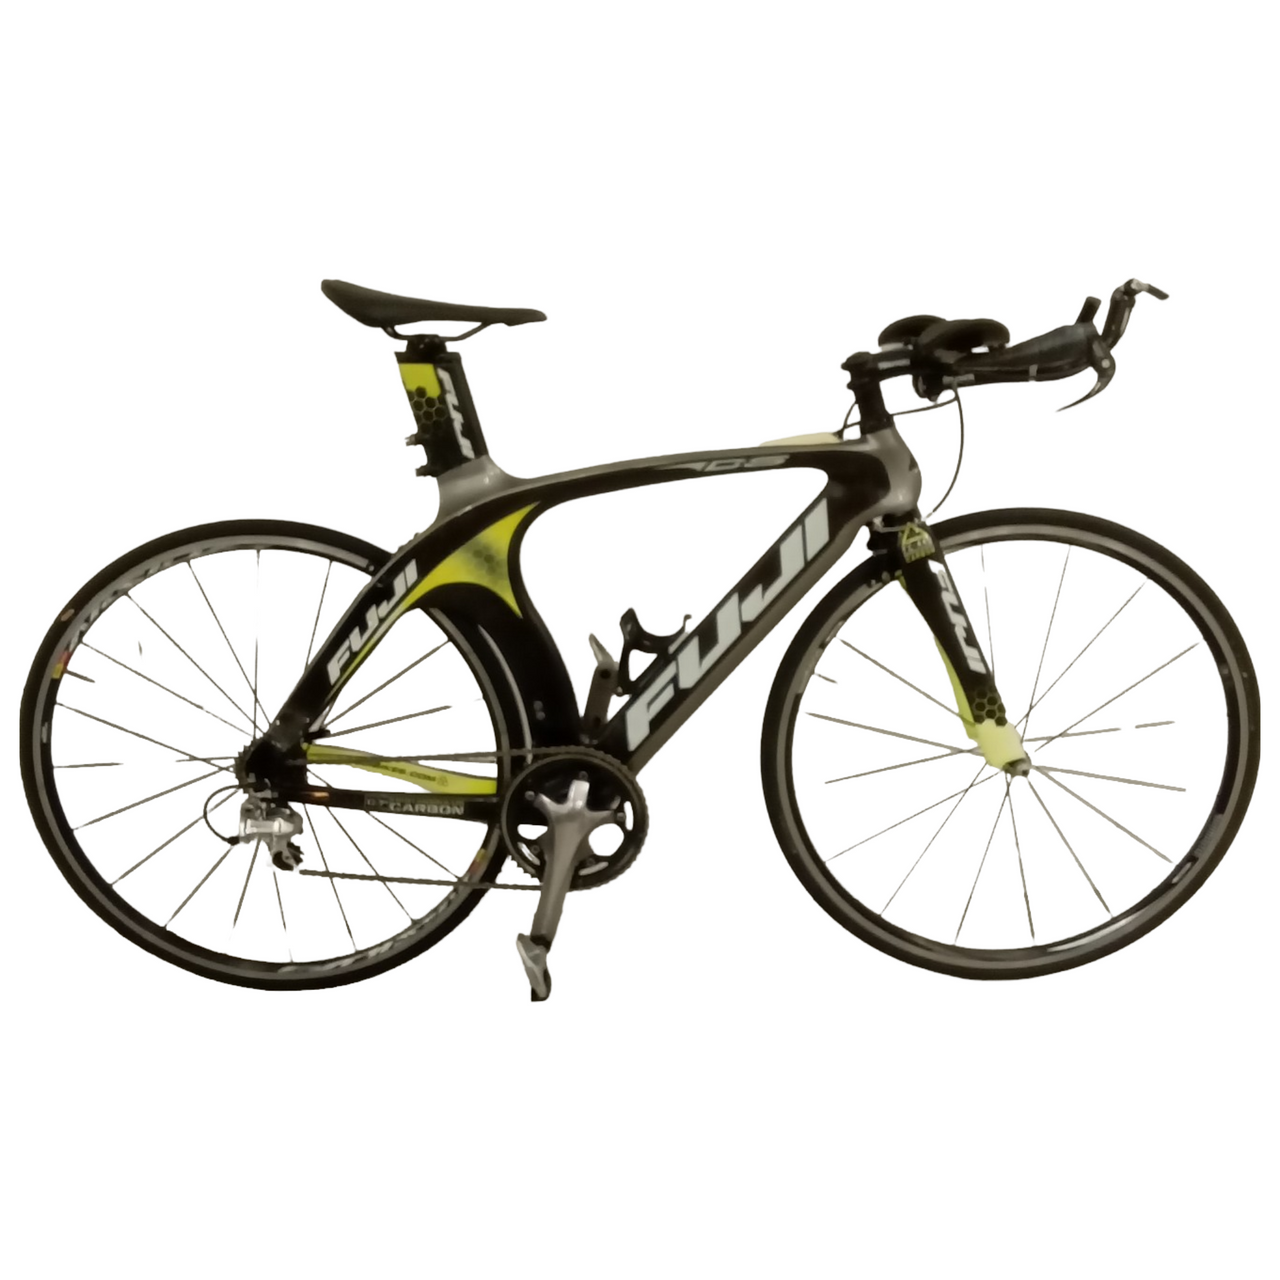 1476 - 50cm Black,
Green, Road Bike, Bike